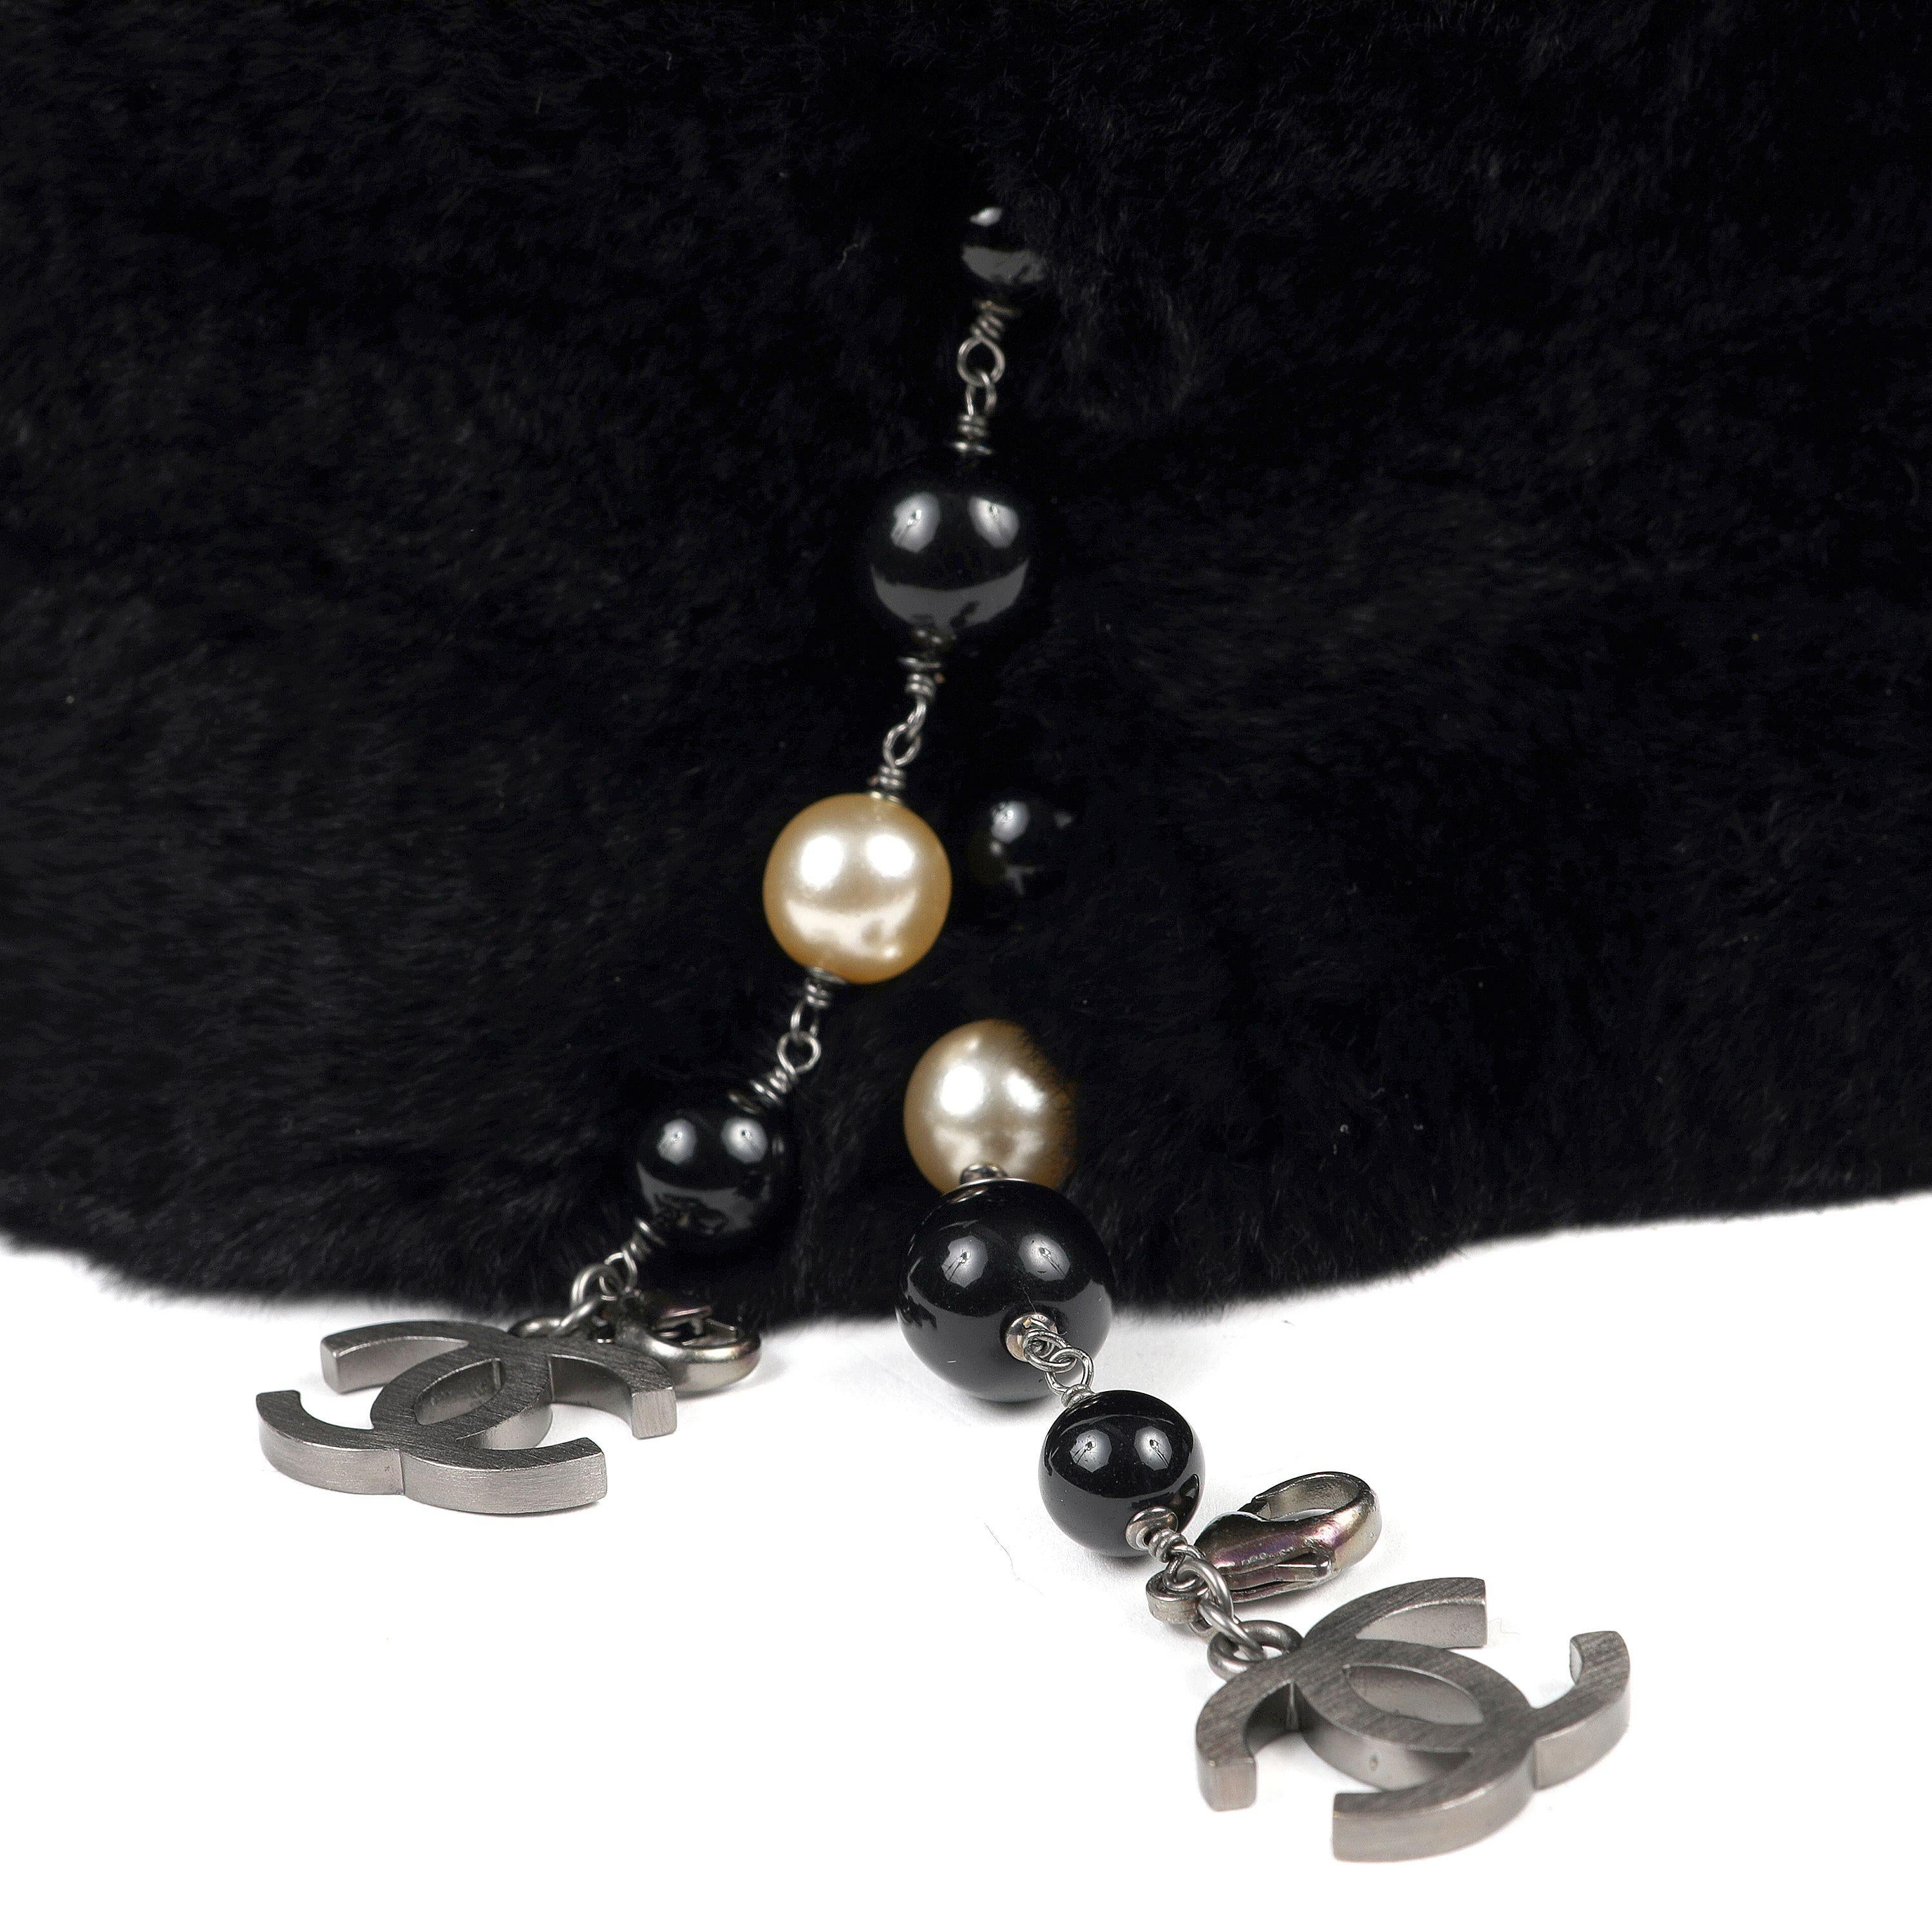 Diese authentische Chanel Schwarz Kaninchen Pelzkragen ist tadellos.  Weicher und luxuriöser schwarzer Kaninchenfell-Halskragen ist mit Kunstperlensträngen und CC's verziert. 

ACO 13757

